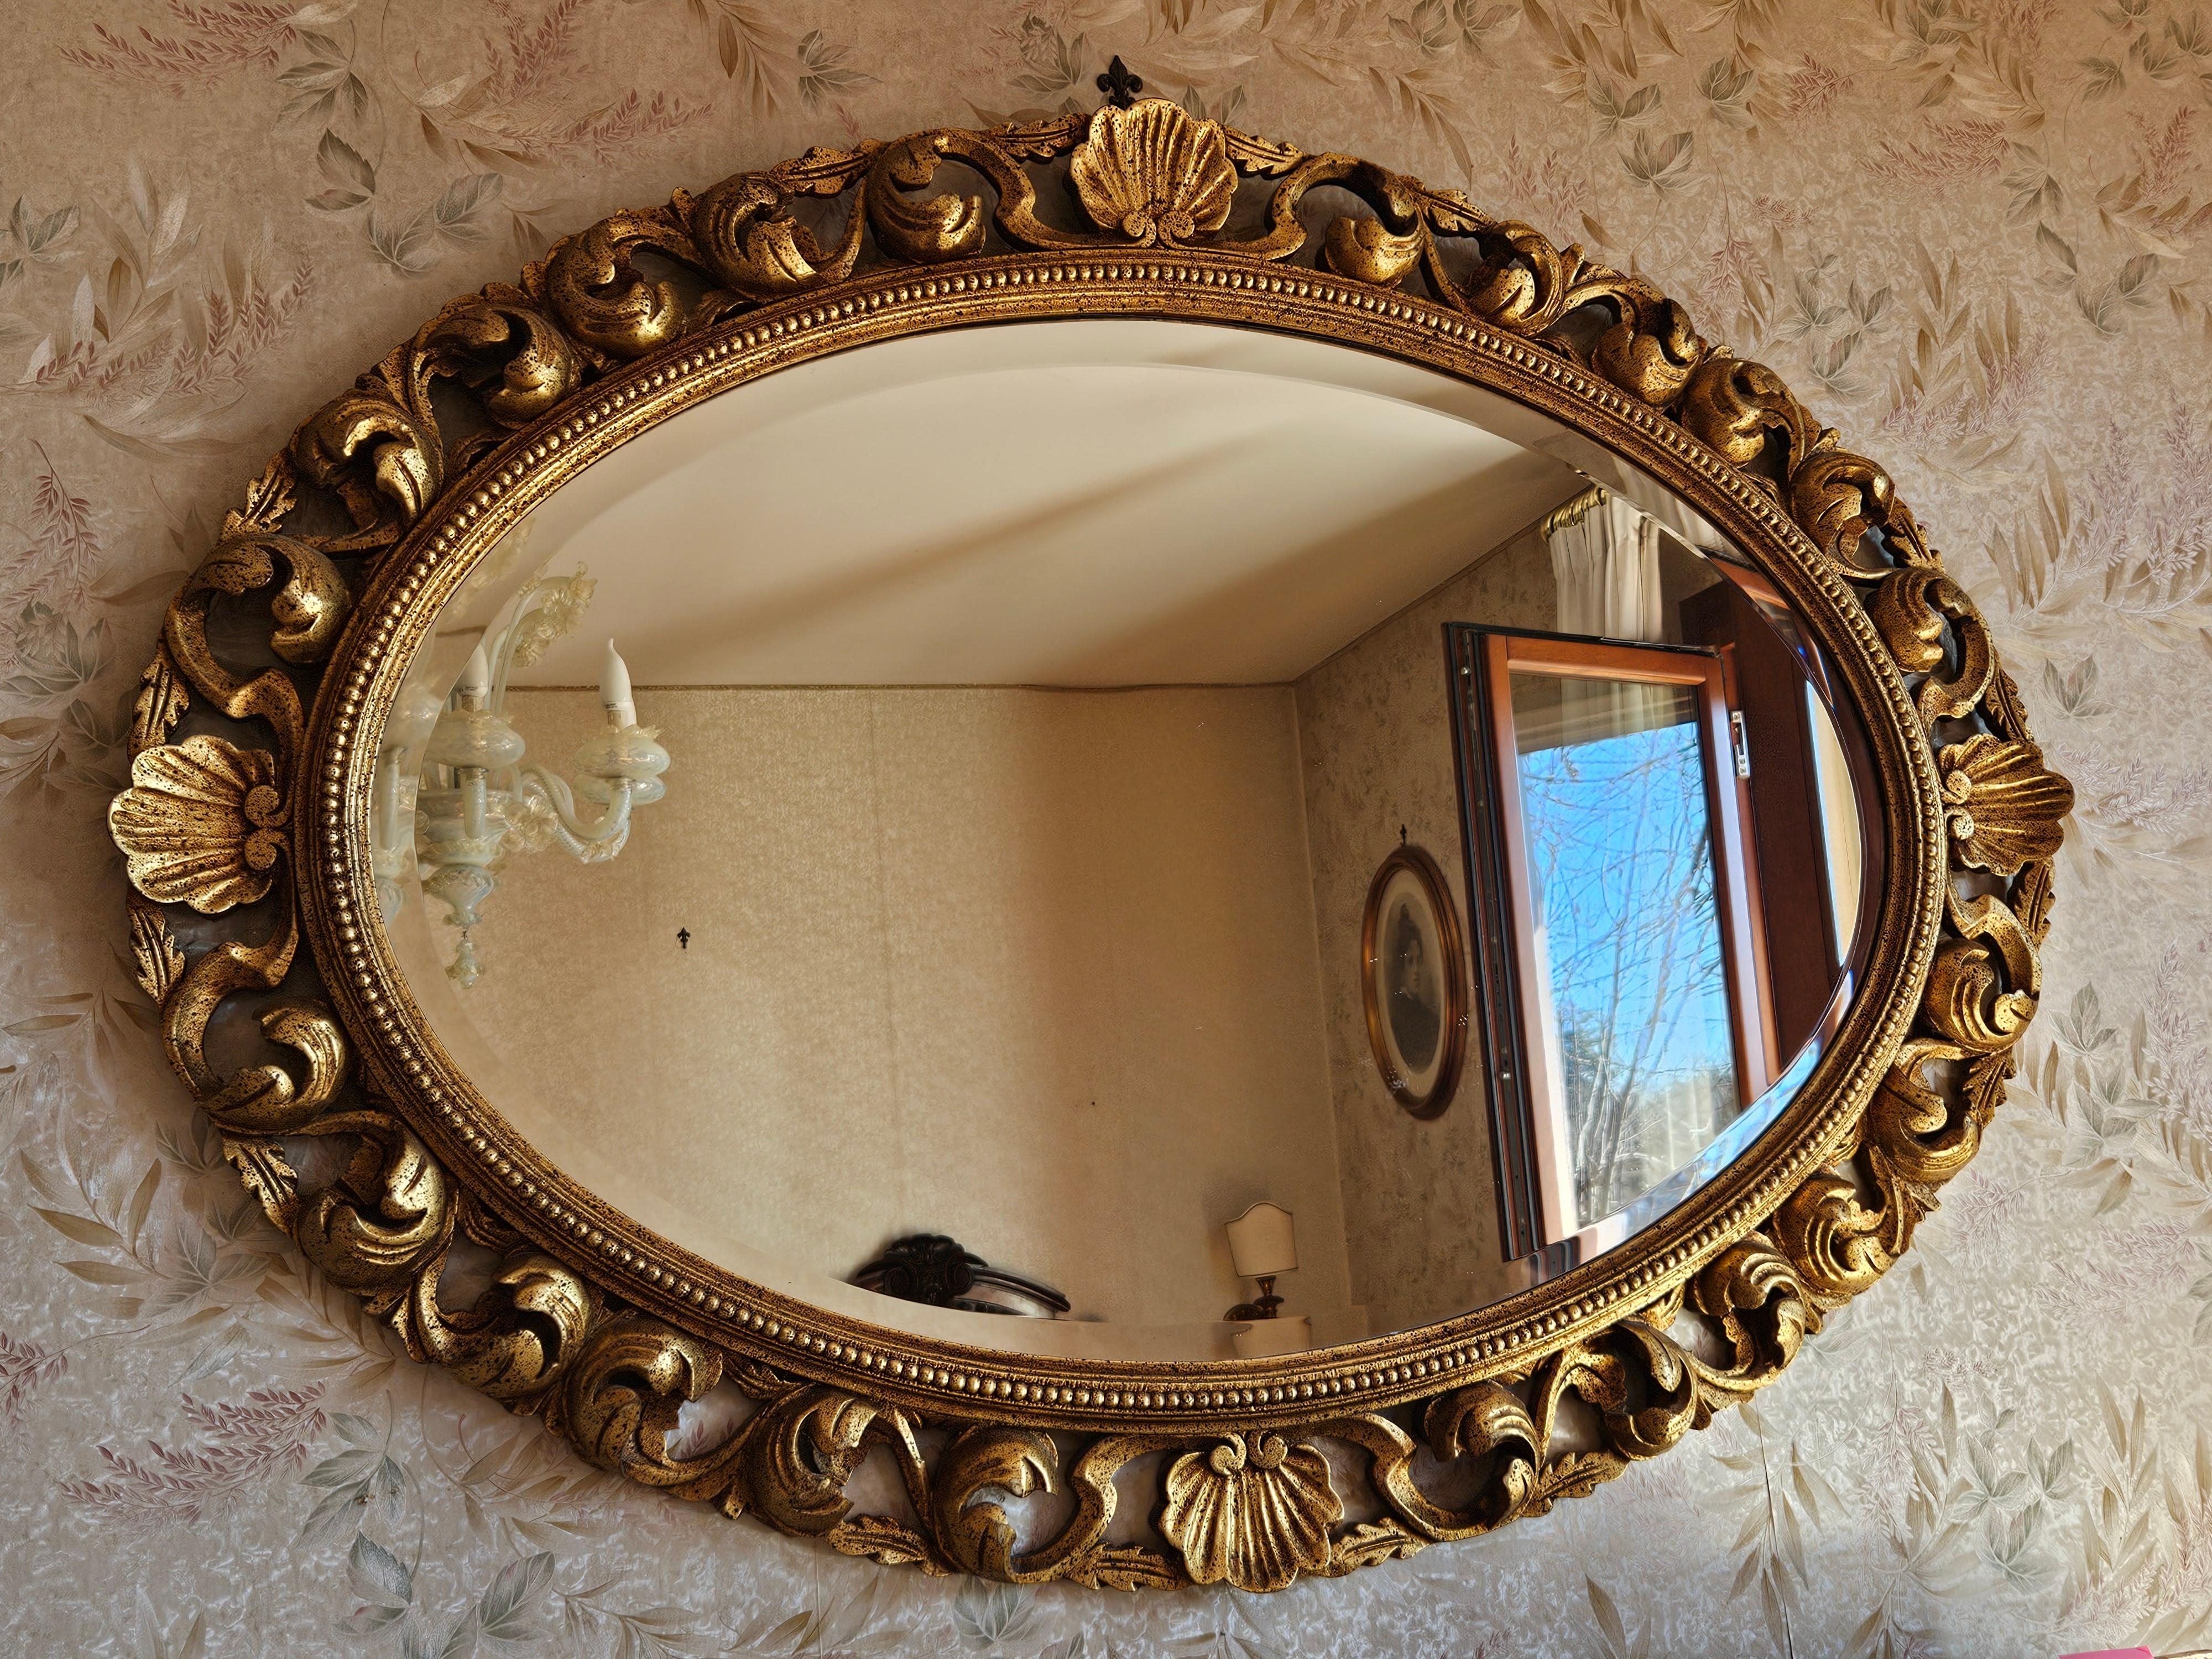 Großer vergoldeter Holzspiegel für Schlafzimmer oder Wohnzimmer, perfekt für alle Arten von Räumen.

Sehr elegant und raffiniert.

Normale alters- und gebrauchsbedingte Abnutzungserscheinungen.
